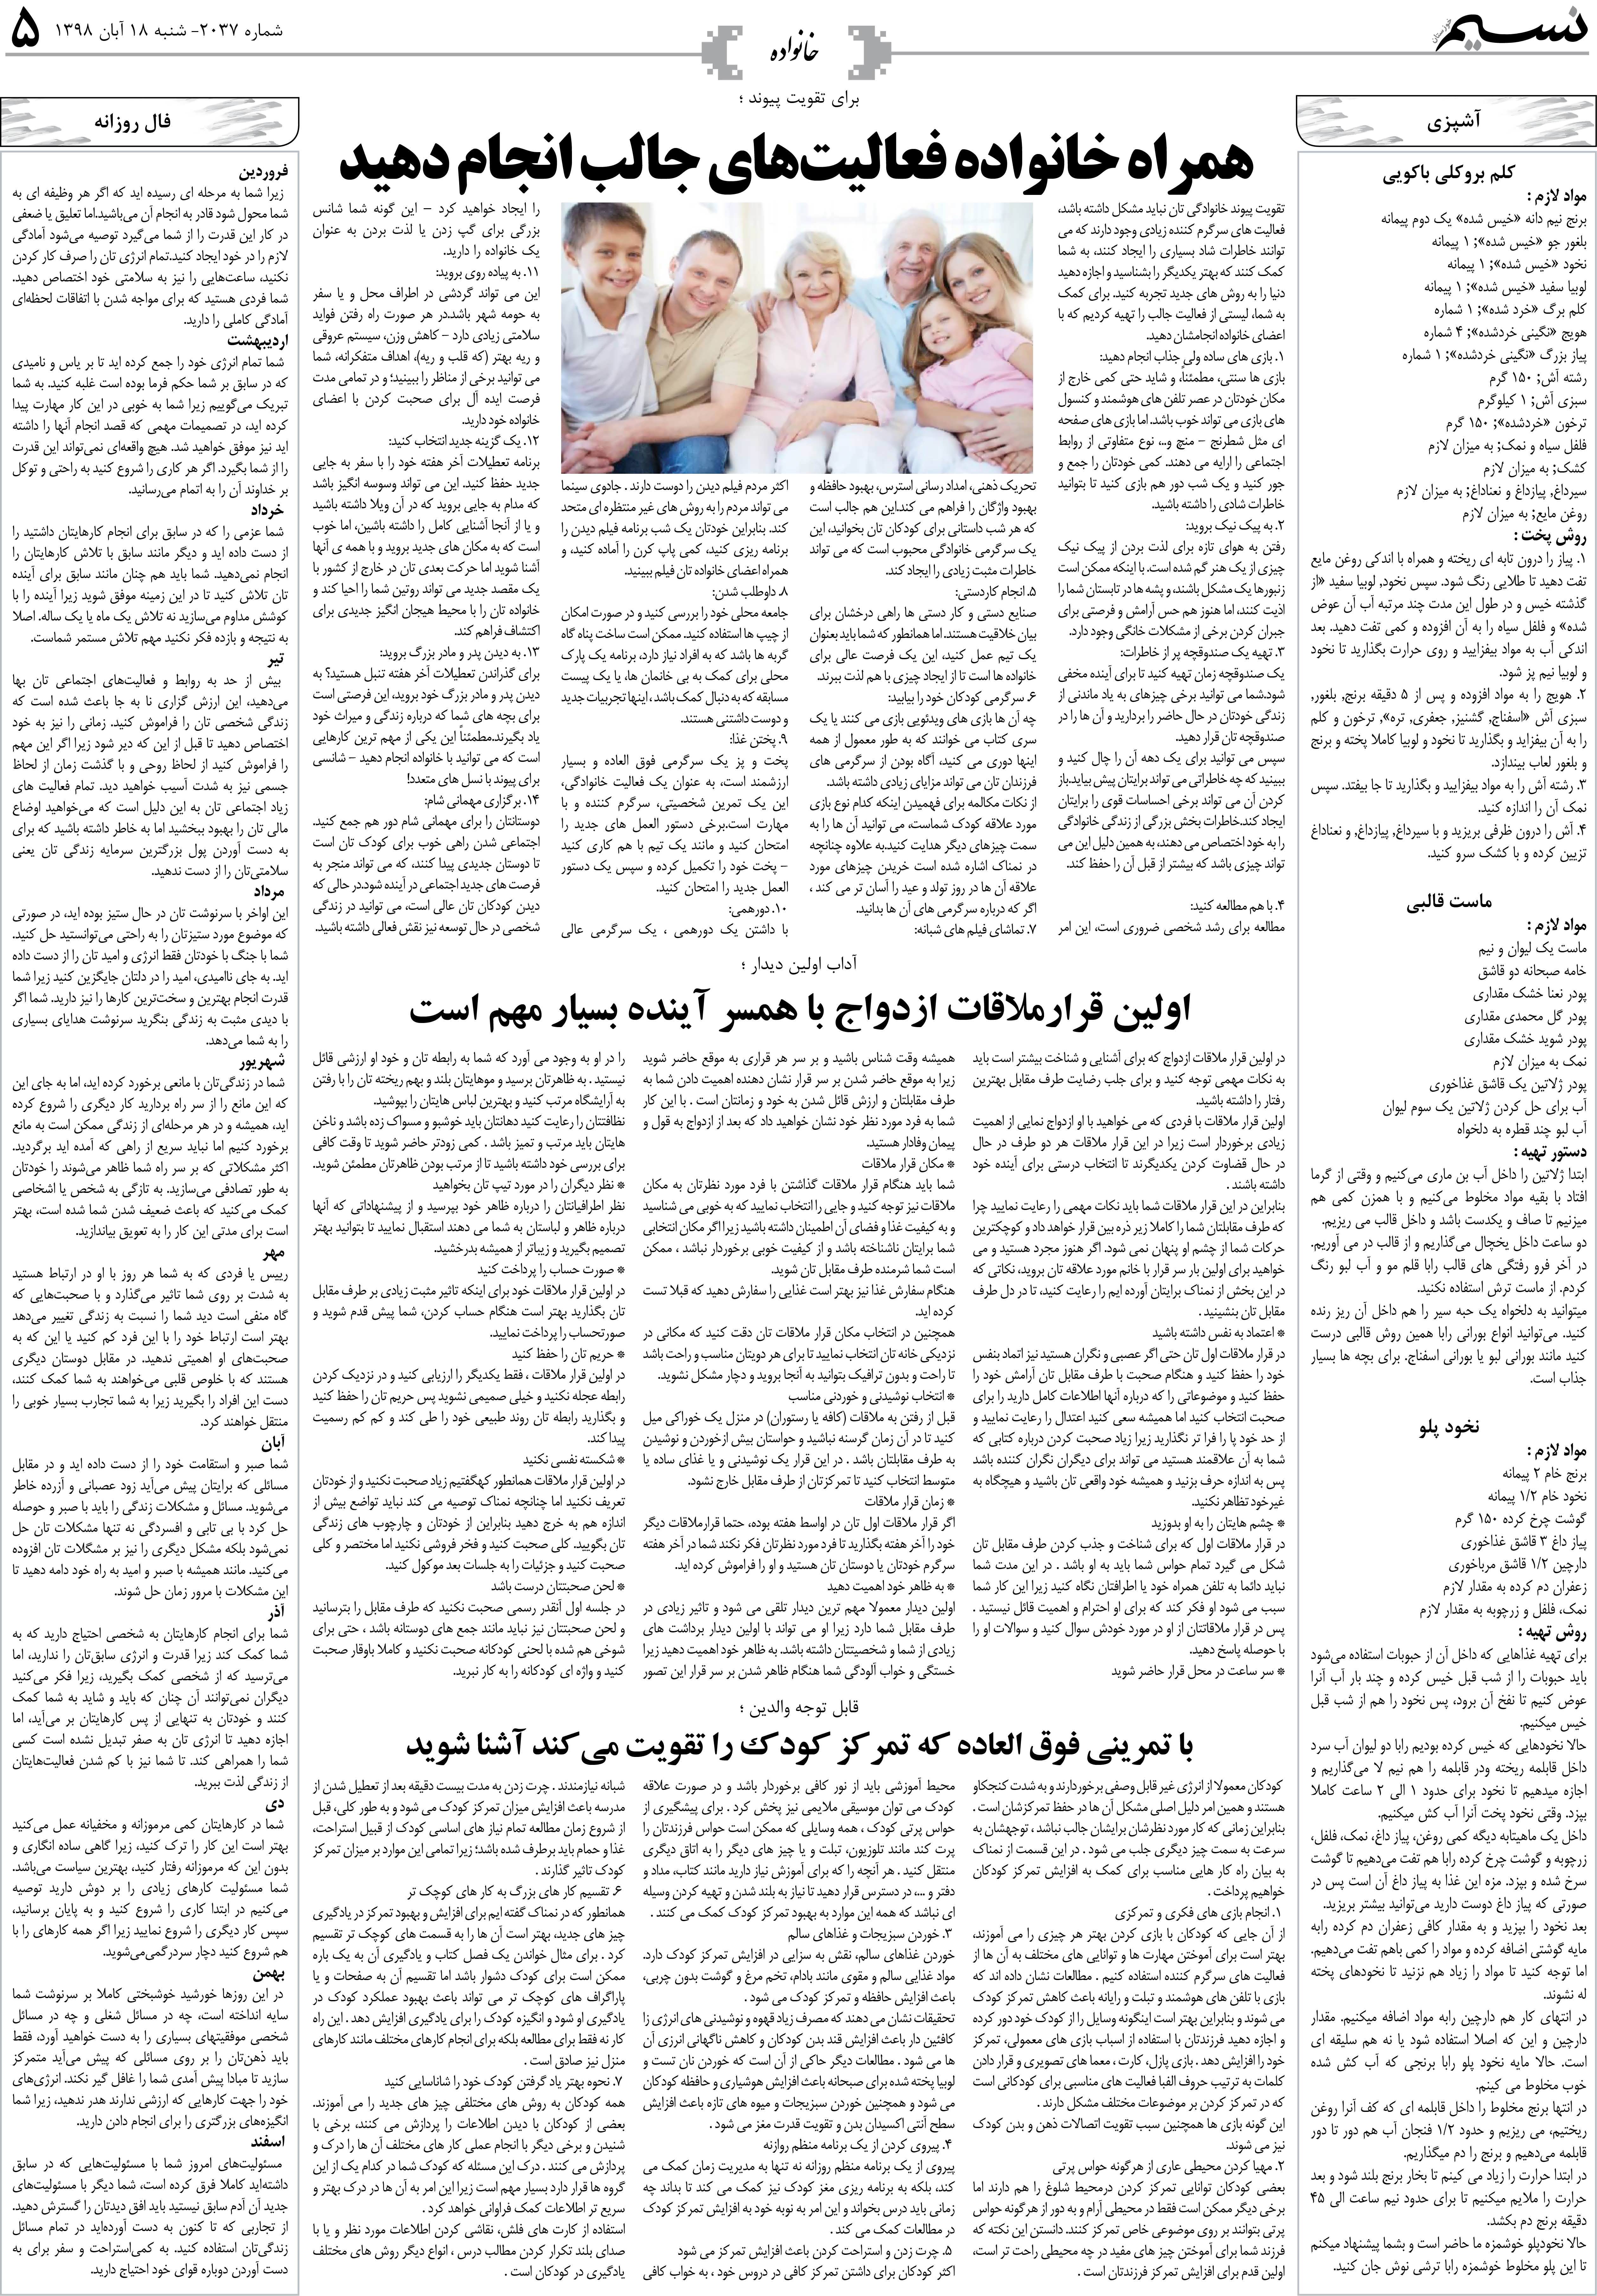 صفحه خانواده روزنامه نسیم شماره 2037